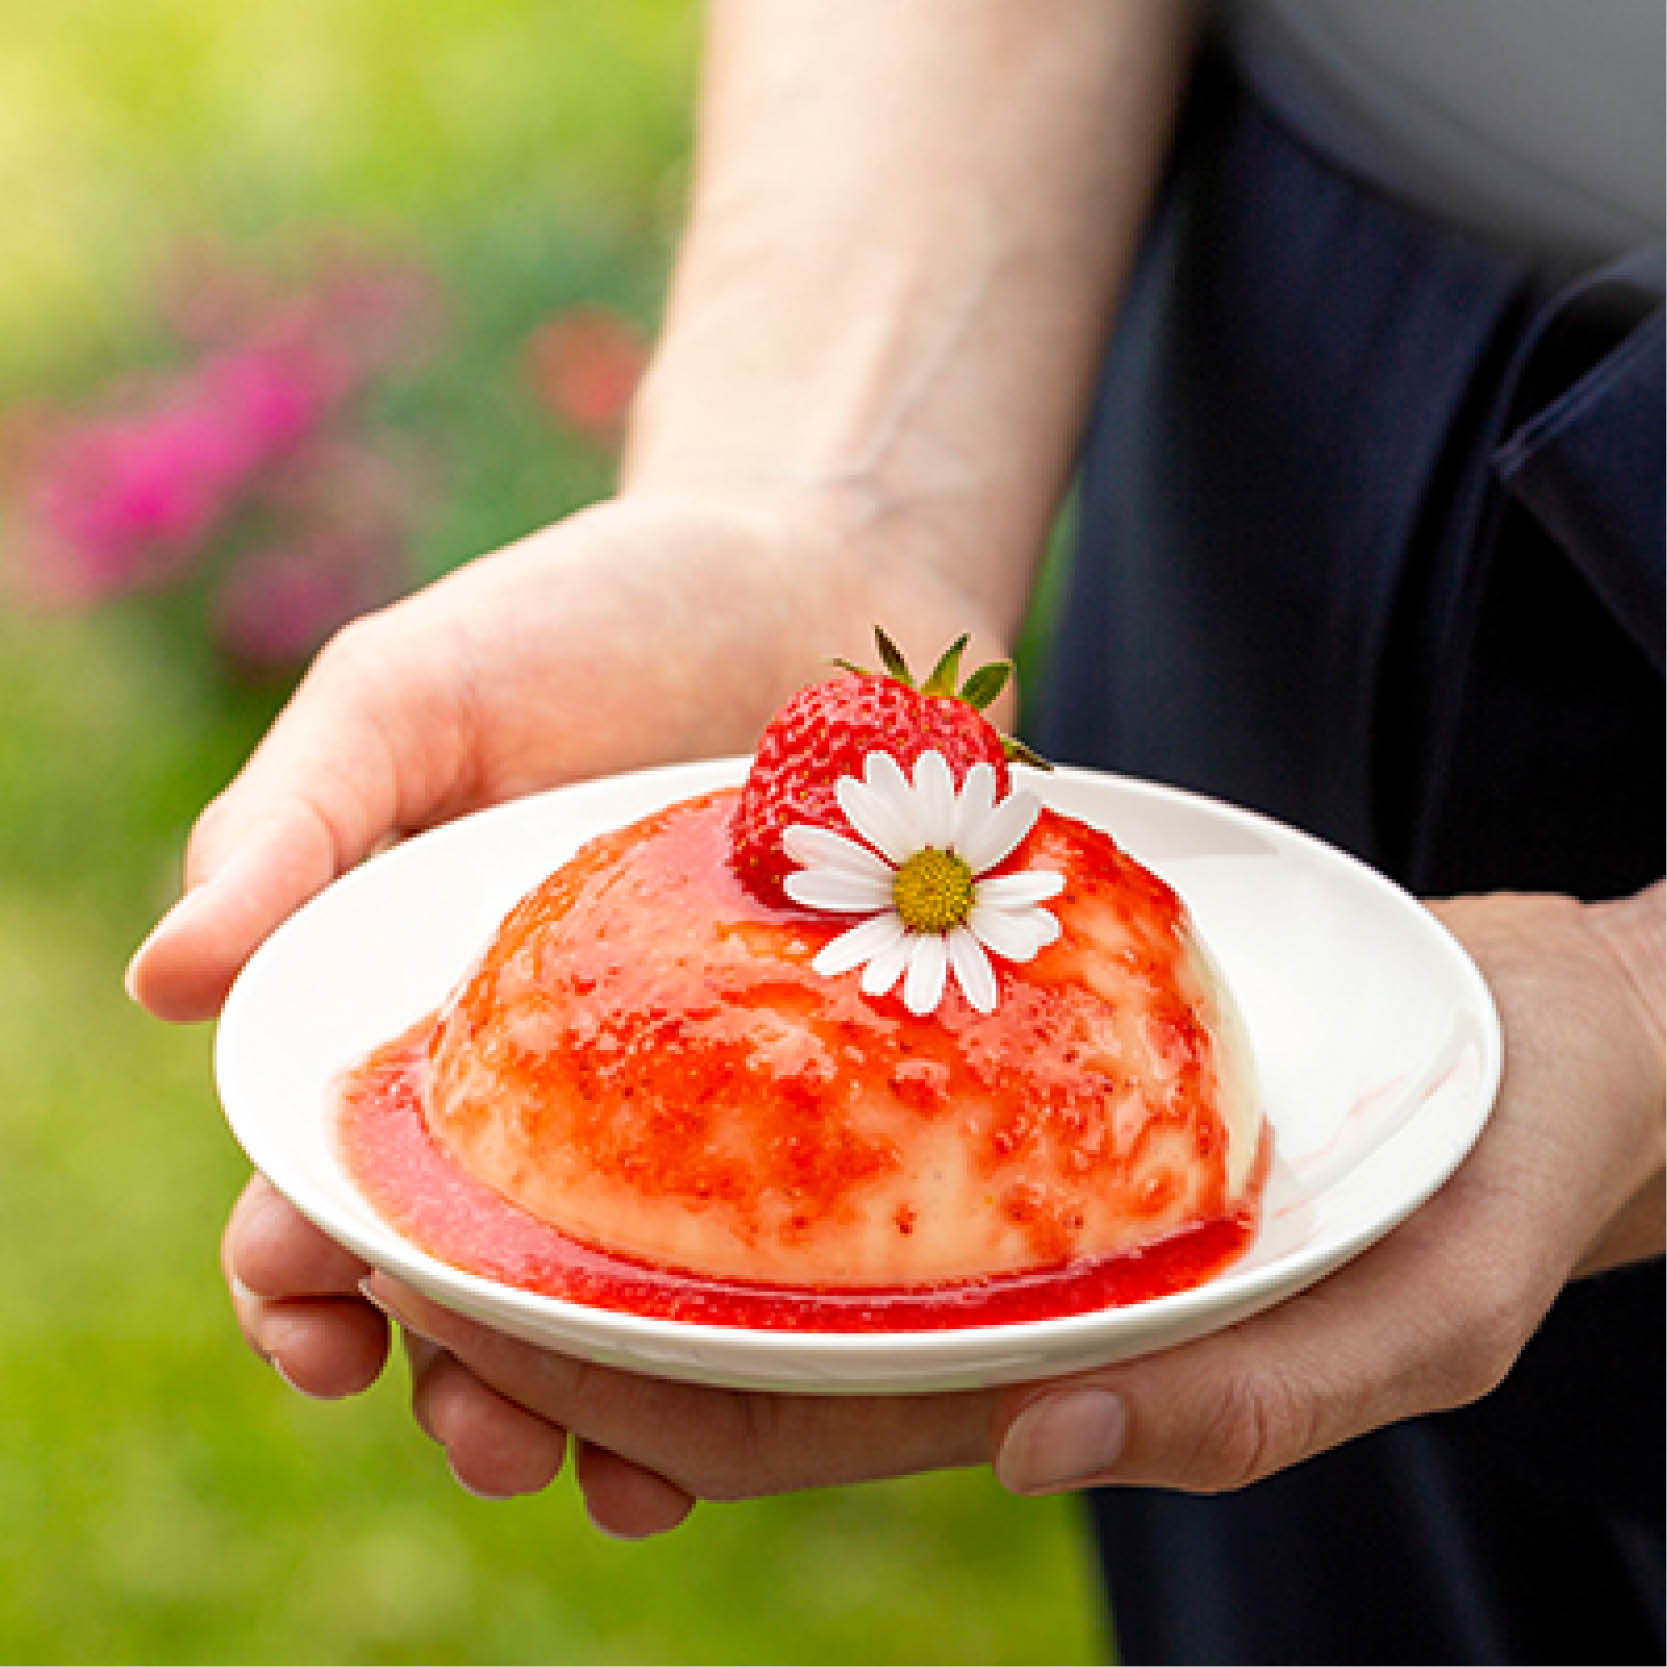 Himmlischer Apfel-Vanillepudding mit Rosen-Erdbeer Fruchtspiegel - Himmlischer Apfel-Vanillepudding mit Rosen-Erdbeer Fruchtspiegel